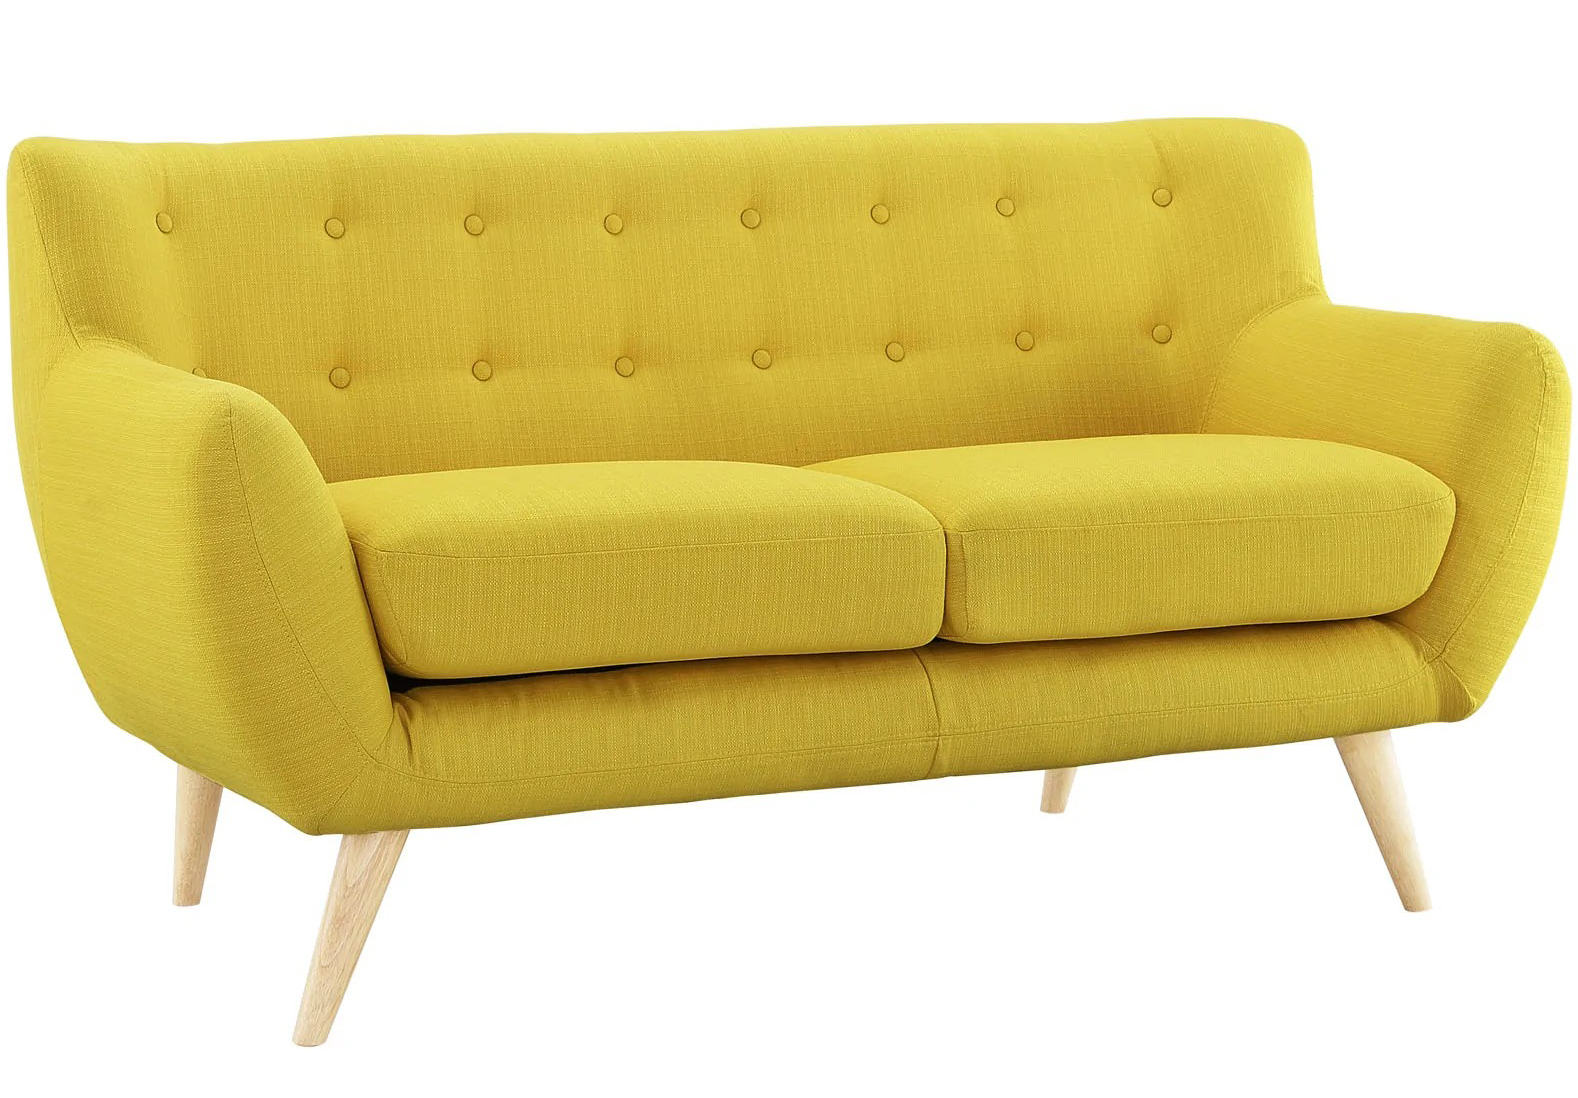 Sofa văng 2 chỗ cơ bản 16 chấm màu vàng